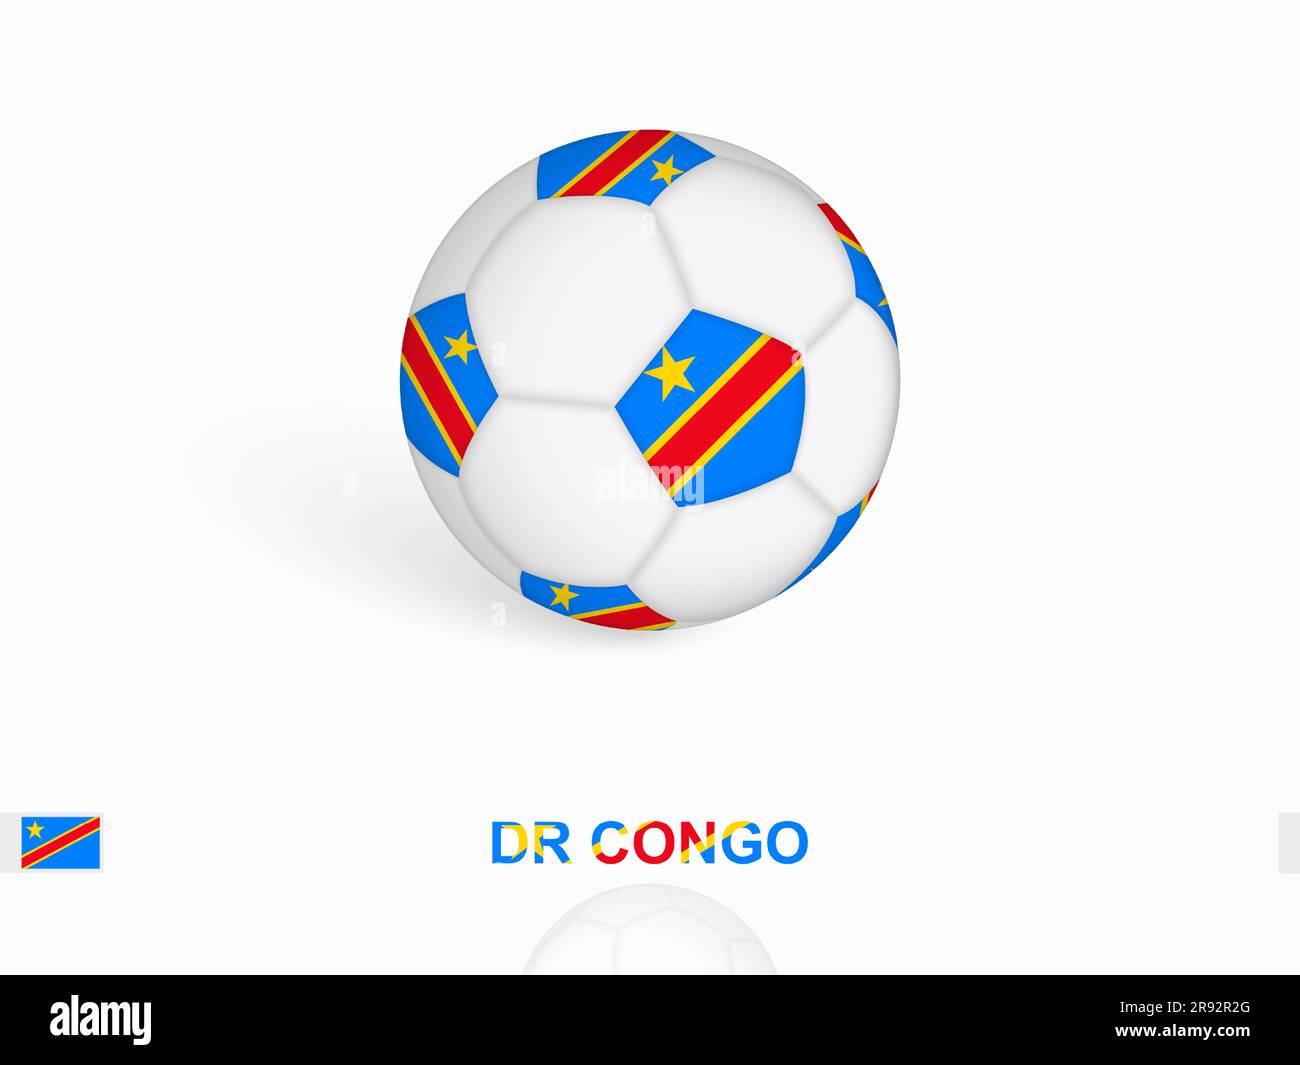 Ballon de football avec le drapeau du Congo DR, équipement de sport de football. Illustration vectorielle. Illustration de Vecteur